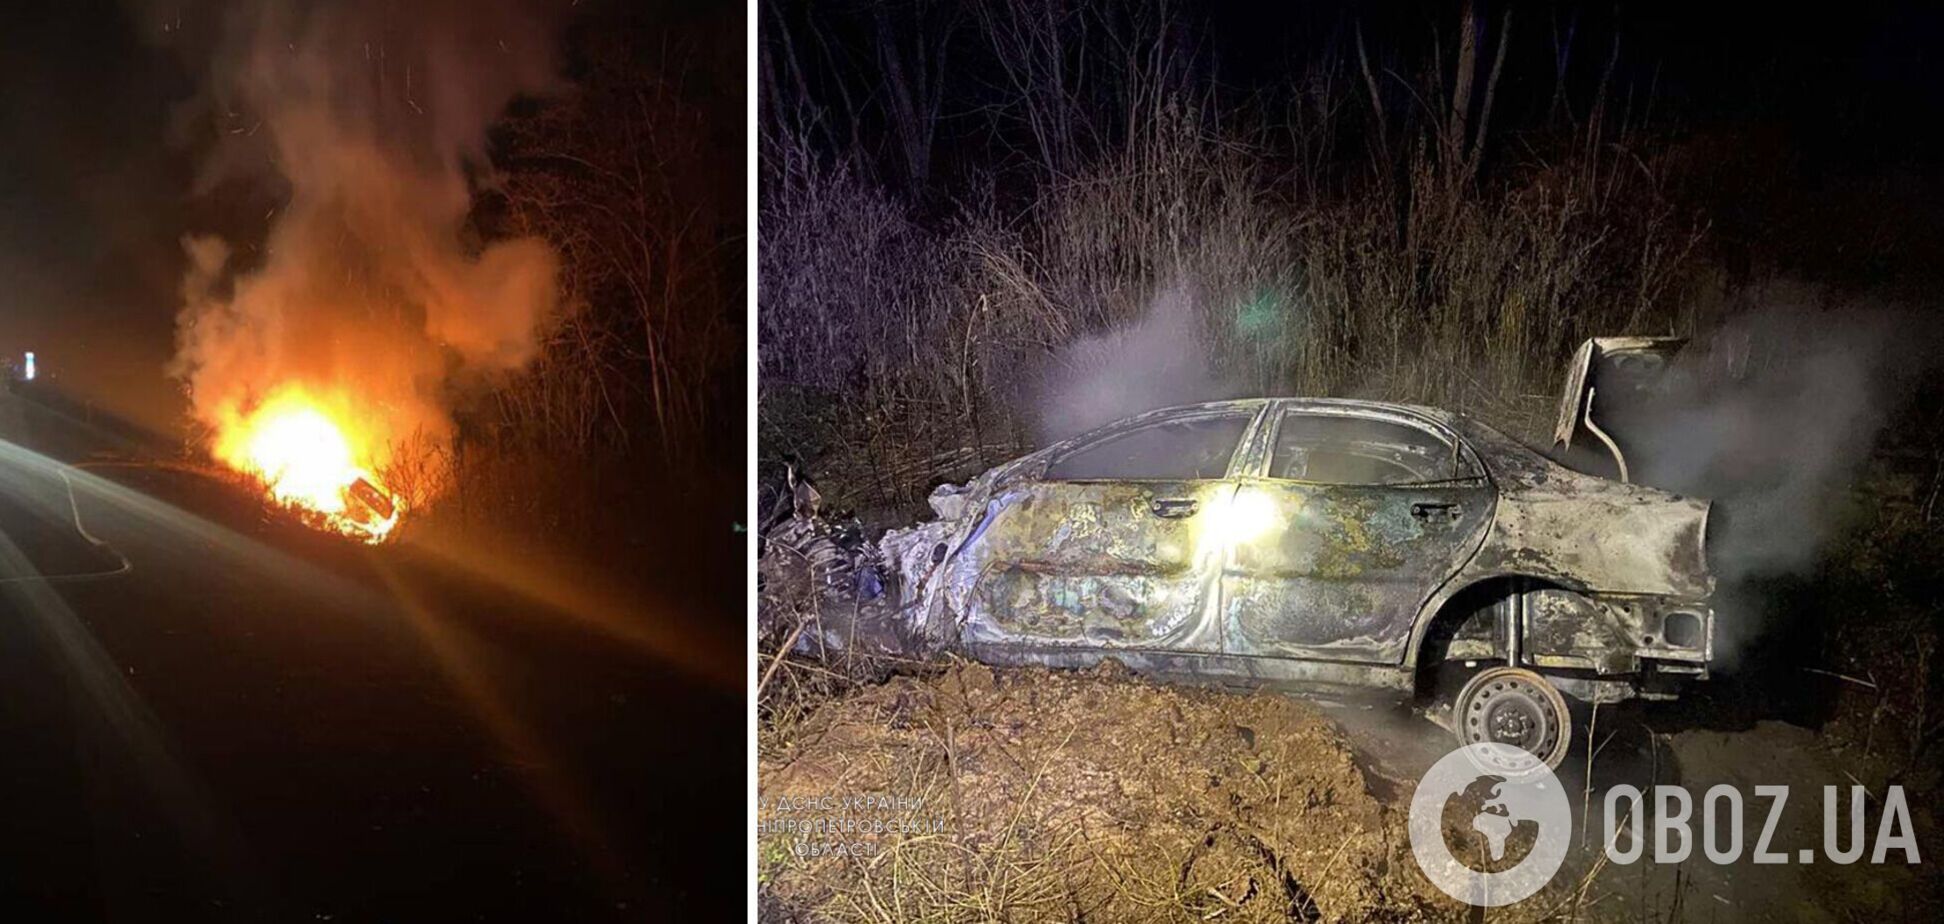 На Дніпропетровщині легковик спалахнув після зіткнення з вантажівкою, загинув водій. Фото